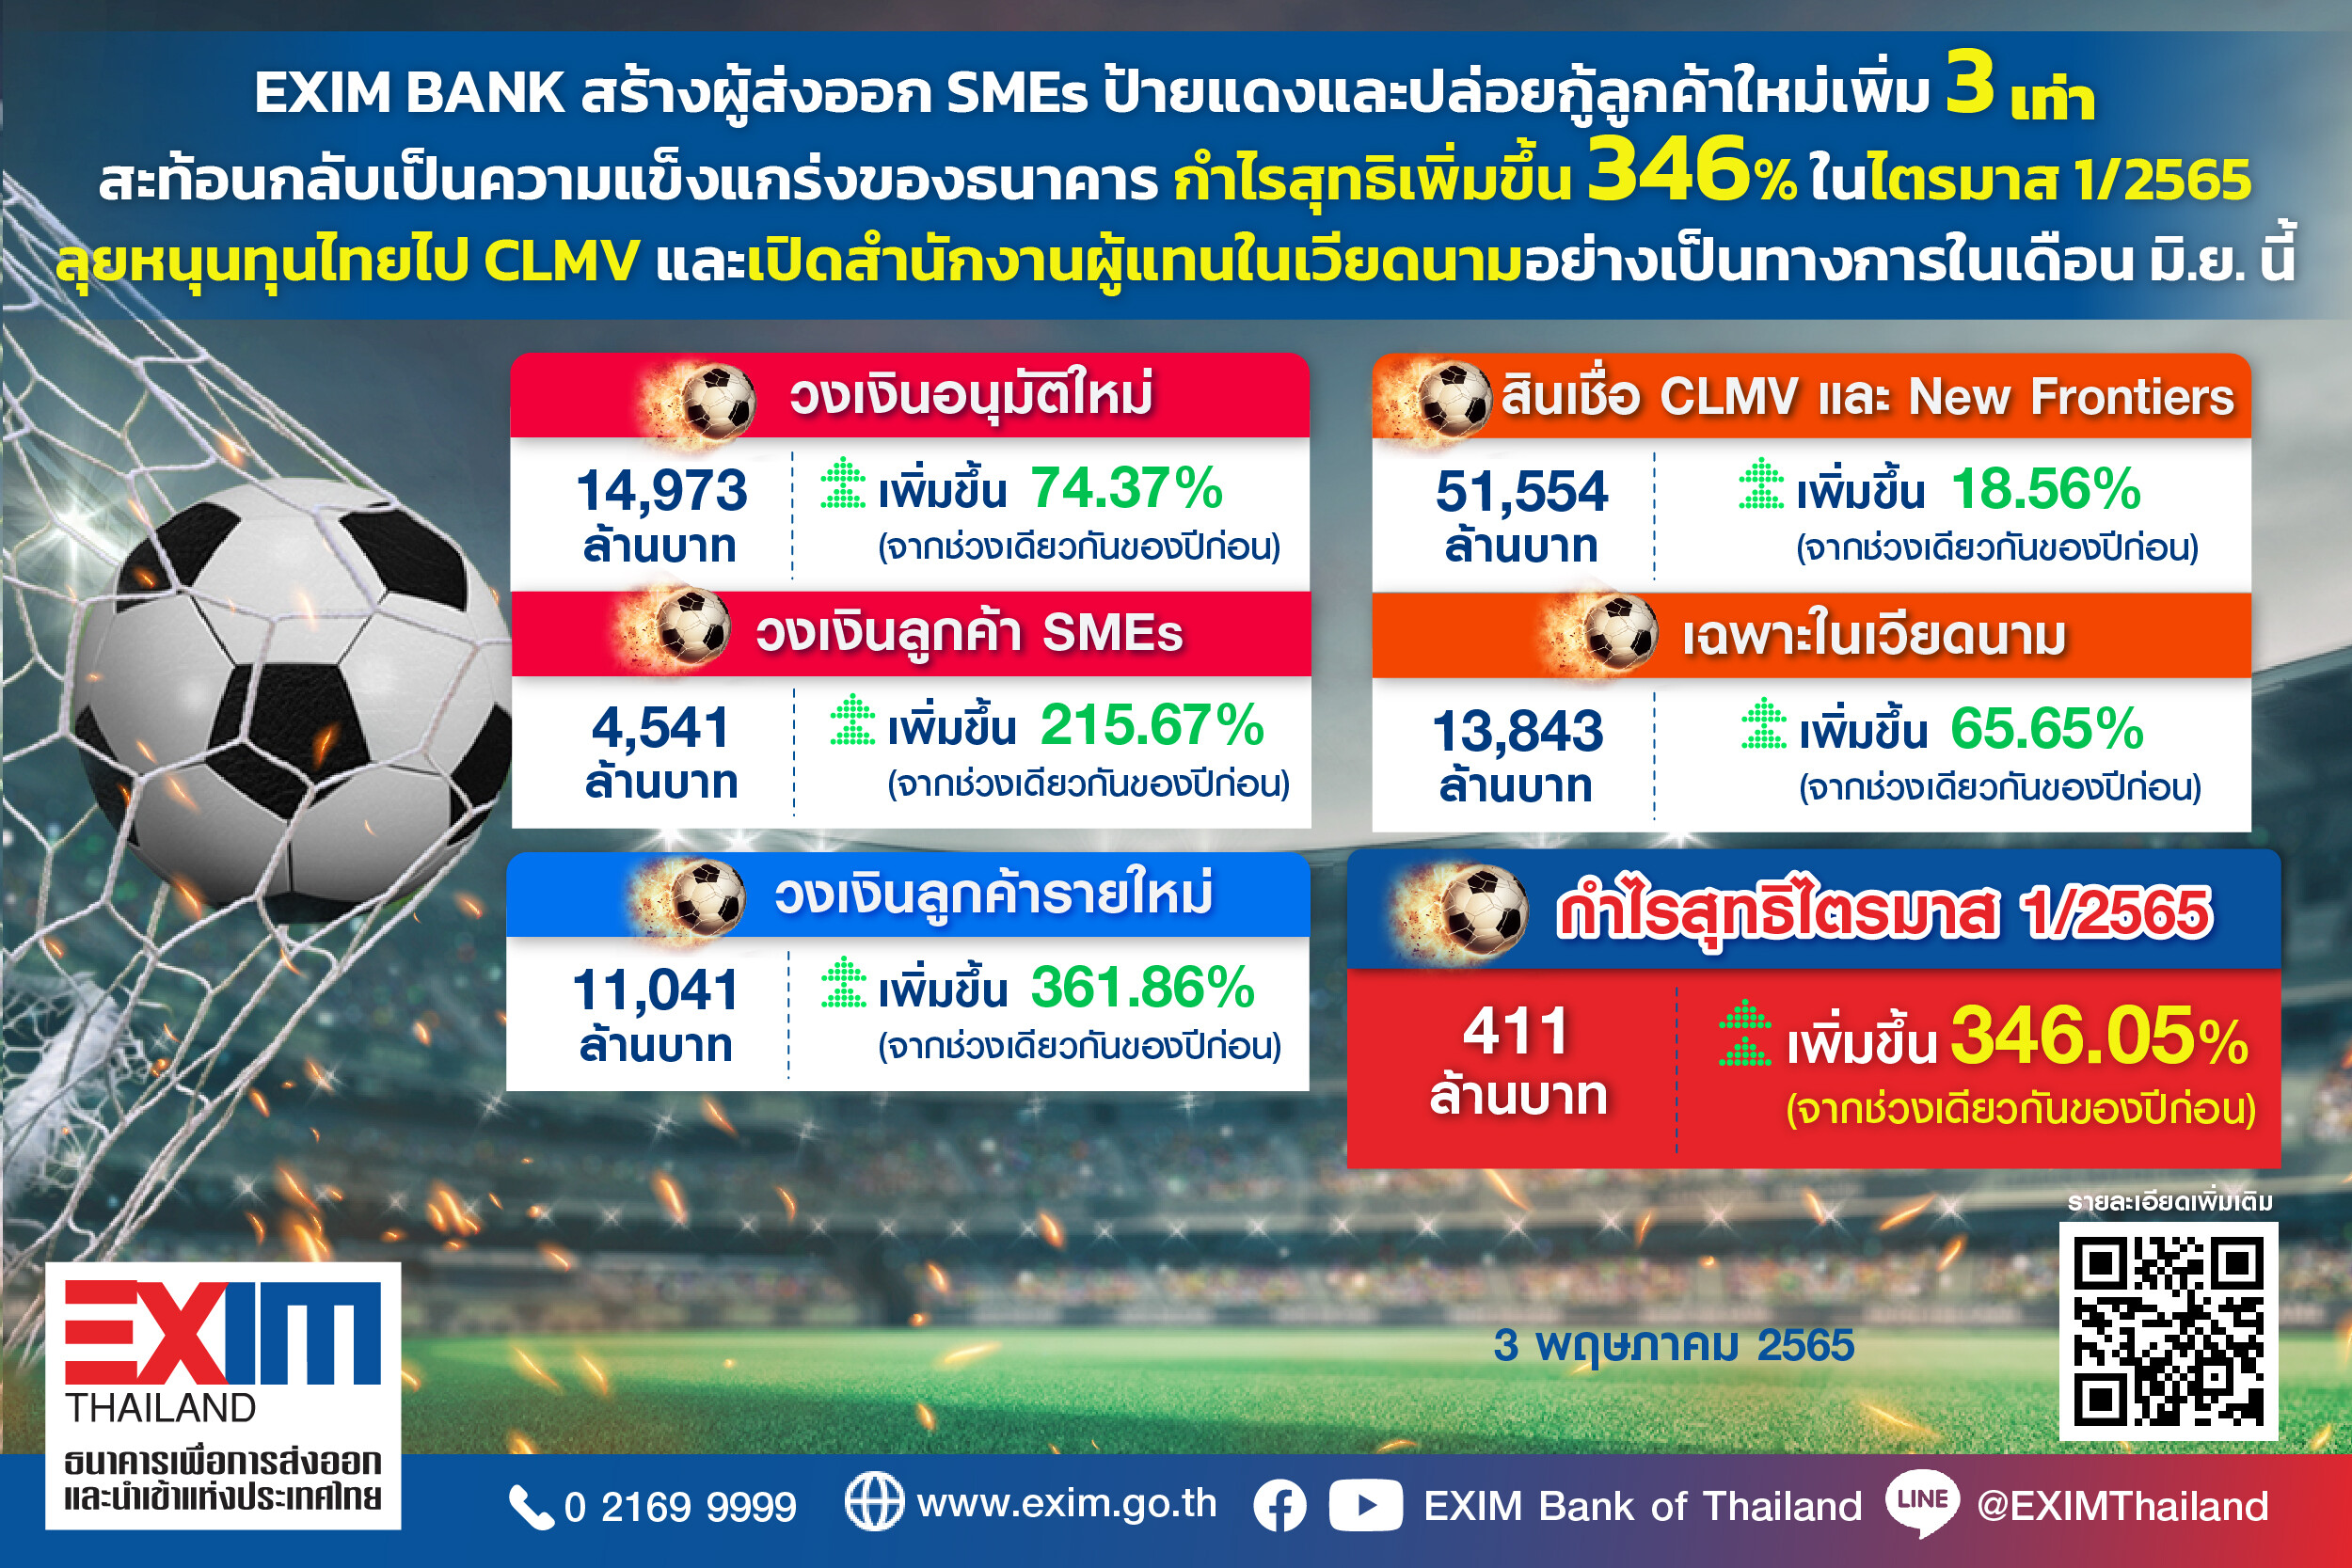 EXIM BANK โชว์ผลงานสร้างผู้ส่งออก SMEs ป้ายแดงและปล่อยกู้ลูกค้าใหม่เพิ่ม 3 เท่า สะท้อนกลับเป็นความแข็งแกร่งของธนาคาร กำไรสุทธิเพิ่มขึ้น 346% ในไตรมาส 1/2565